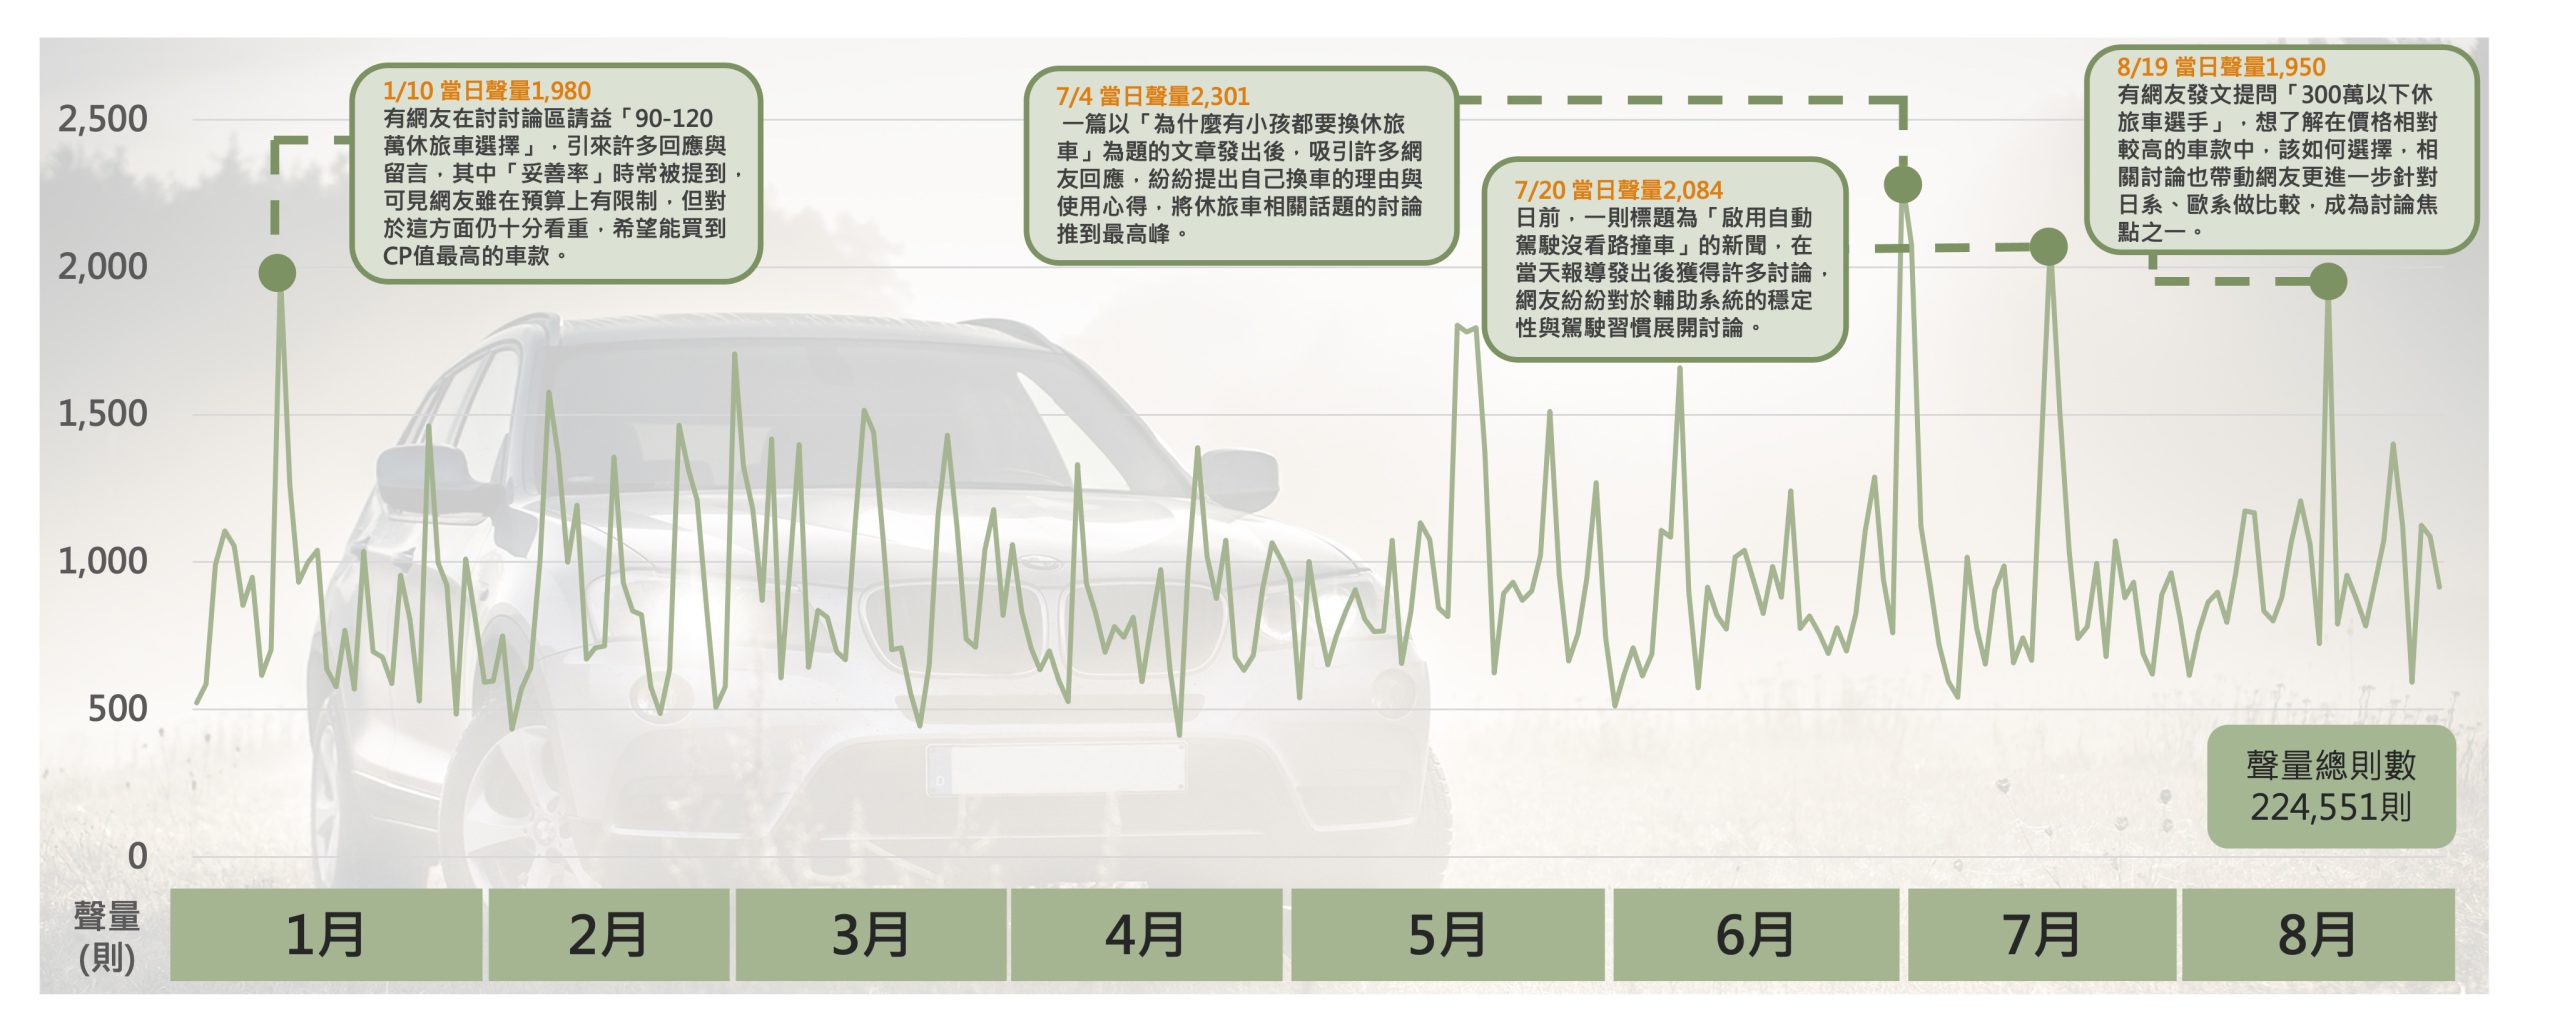 休旅車話題 日聲量趨勢圖與高峰當日熱門話題